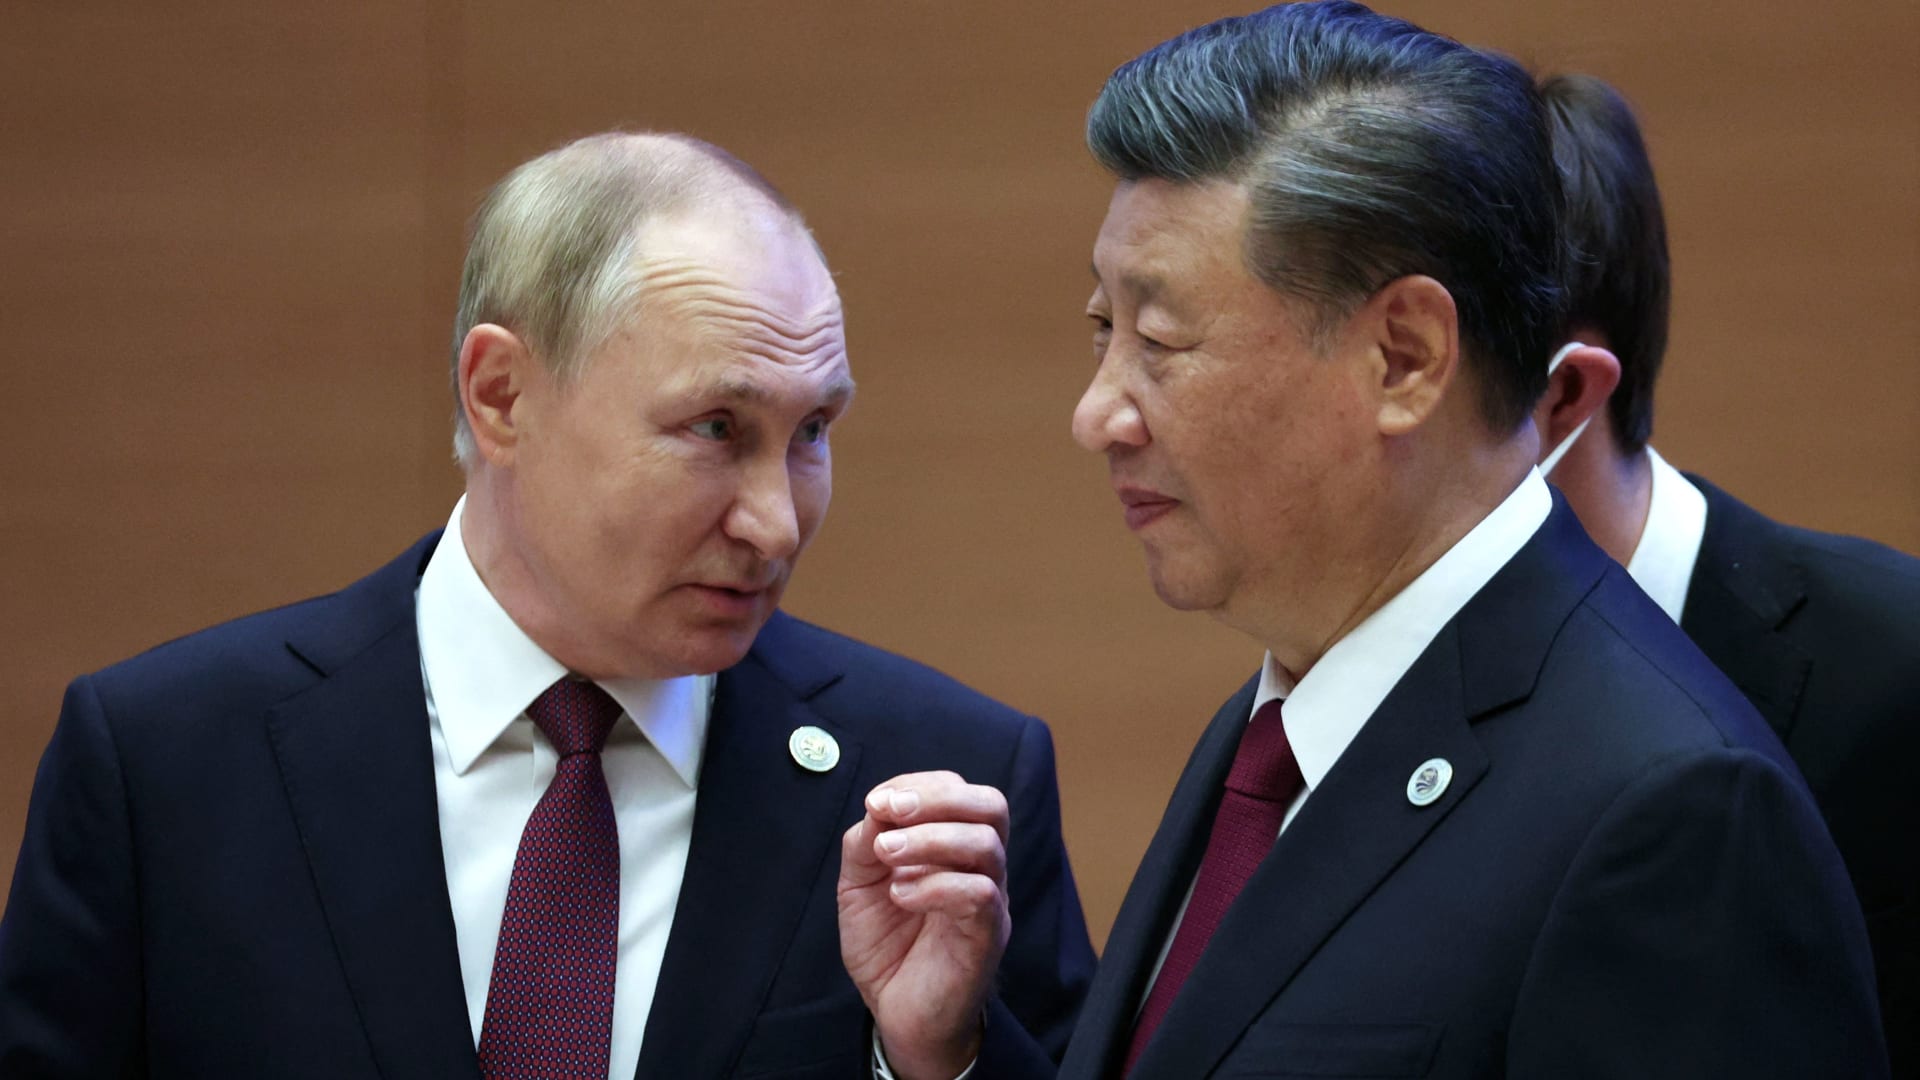 الرئيس الصيني يصف علاقته مع بوتين بـ"الصداقة الأبدية".. بماذا وصفها بوتين؟